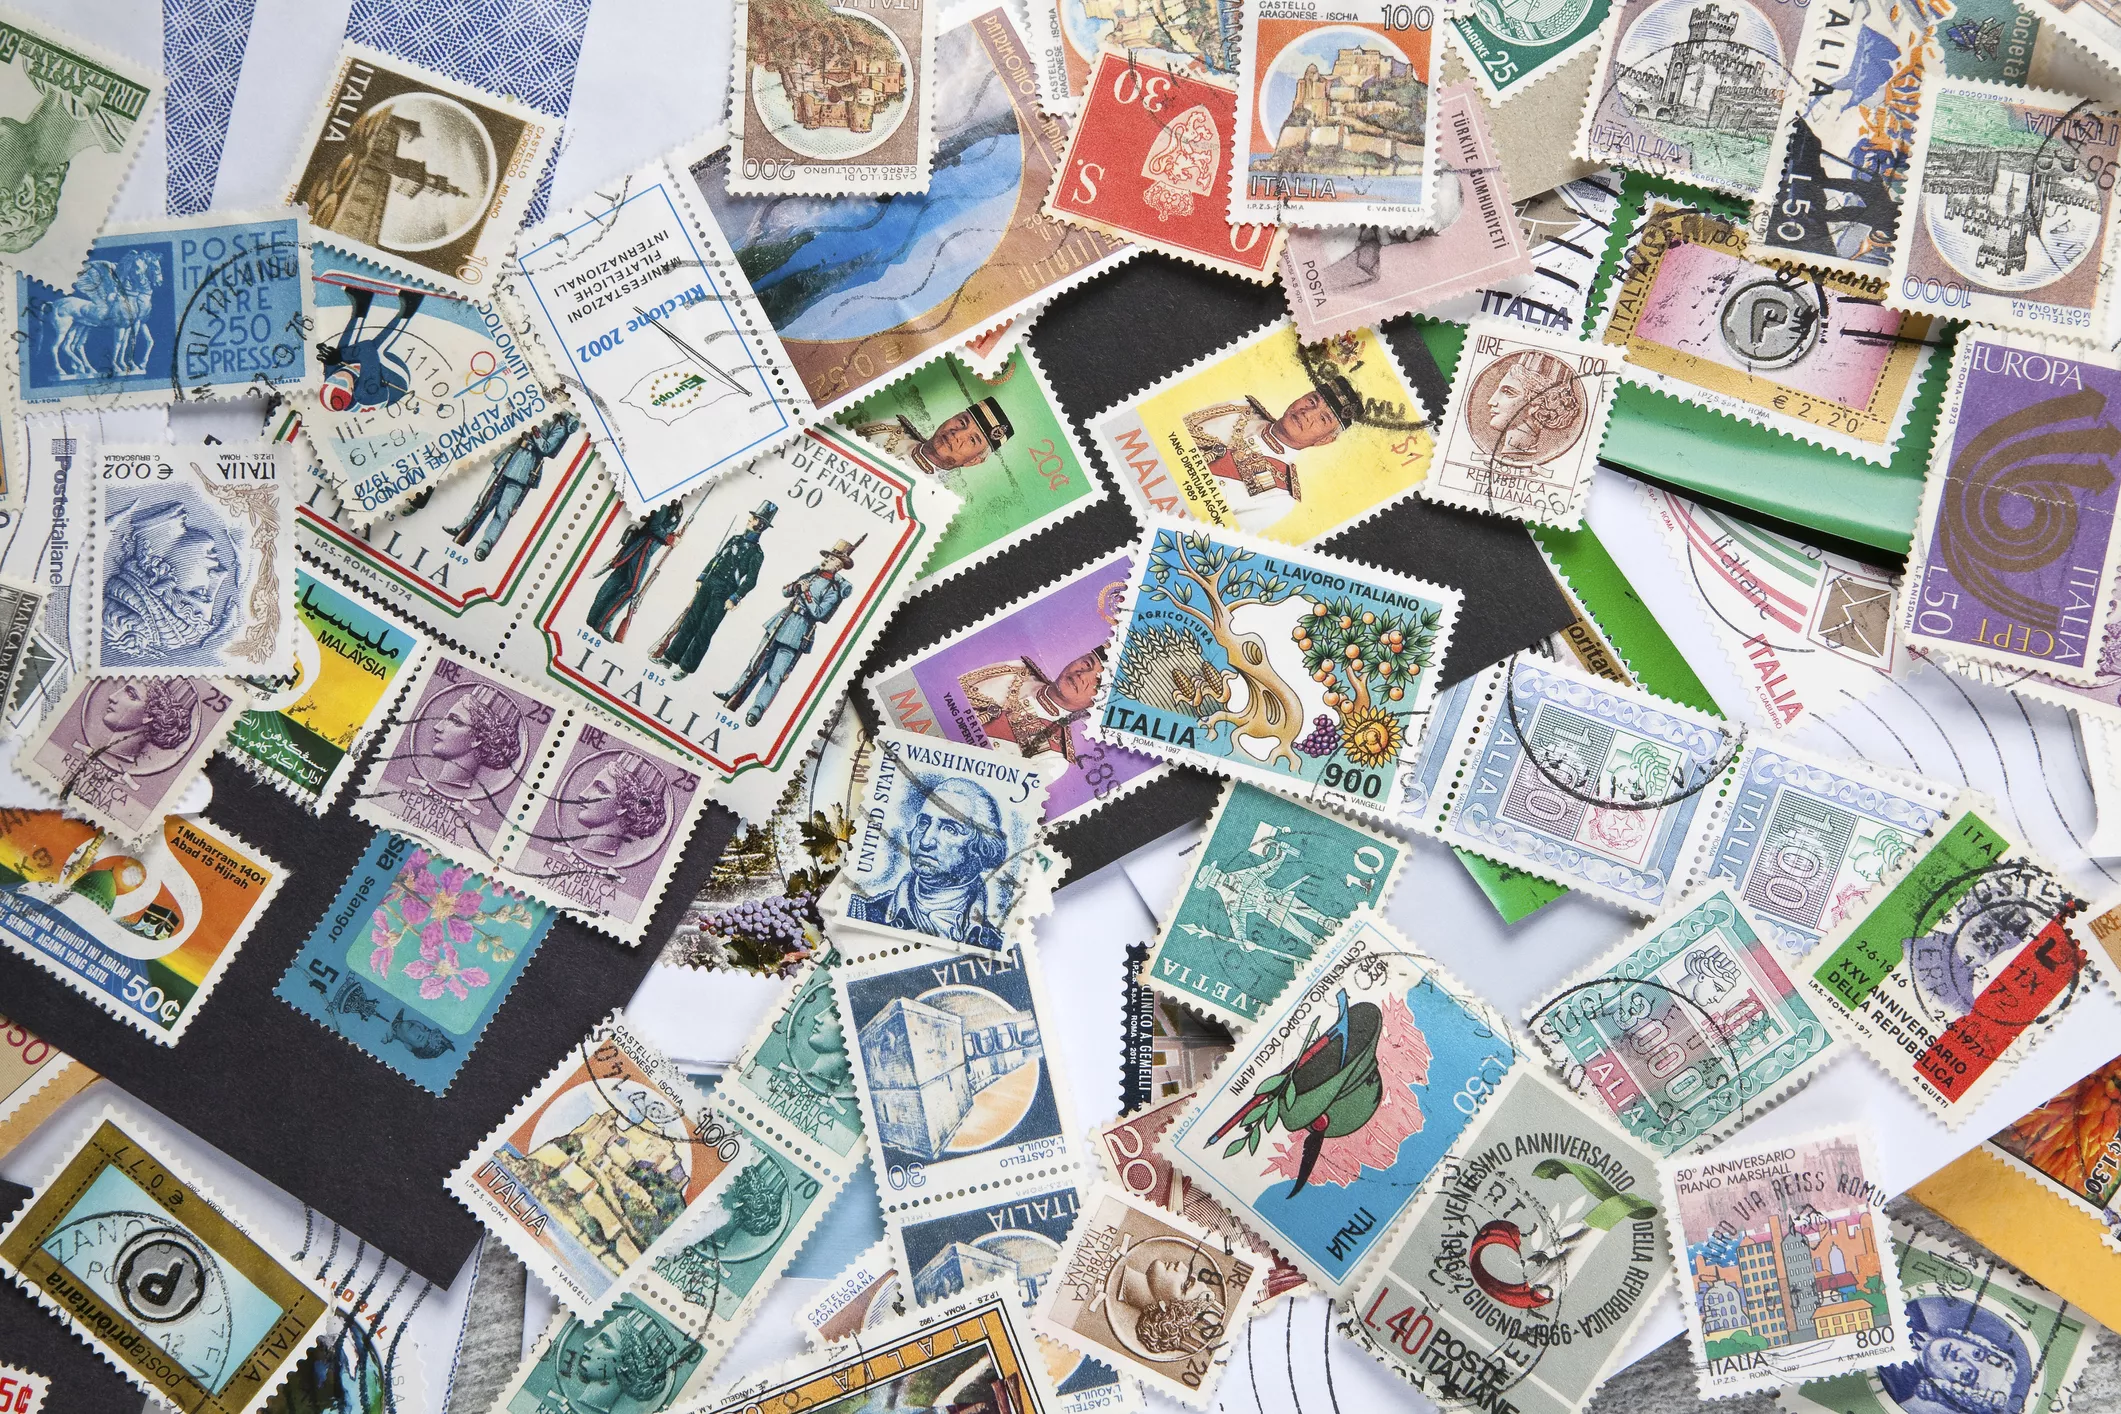 Els segells postals van solucionar els pagaments per enviar cartes